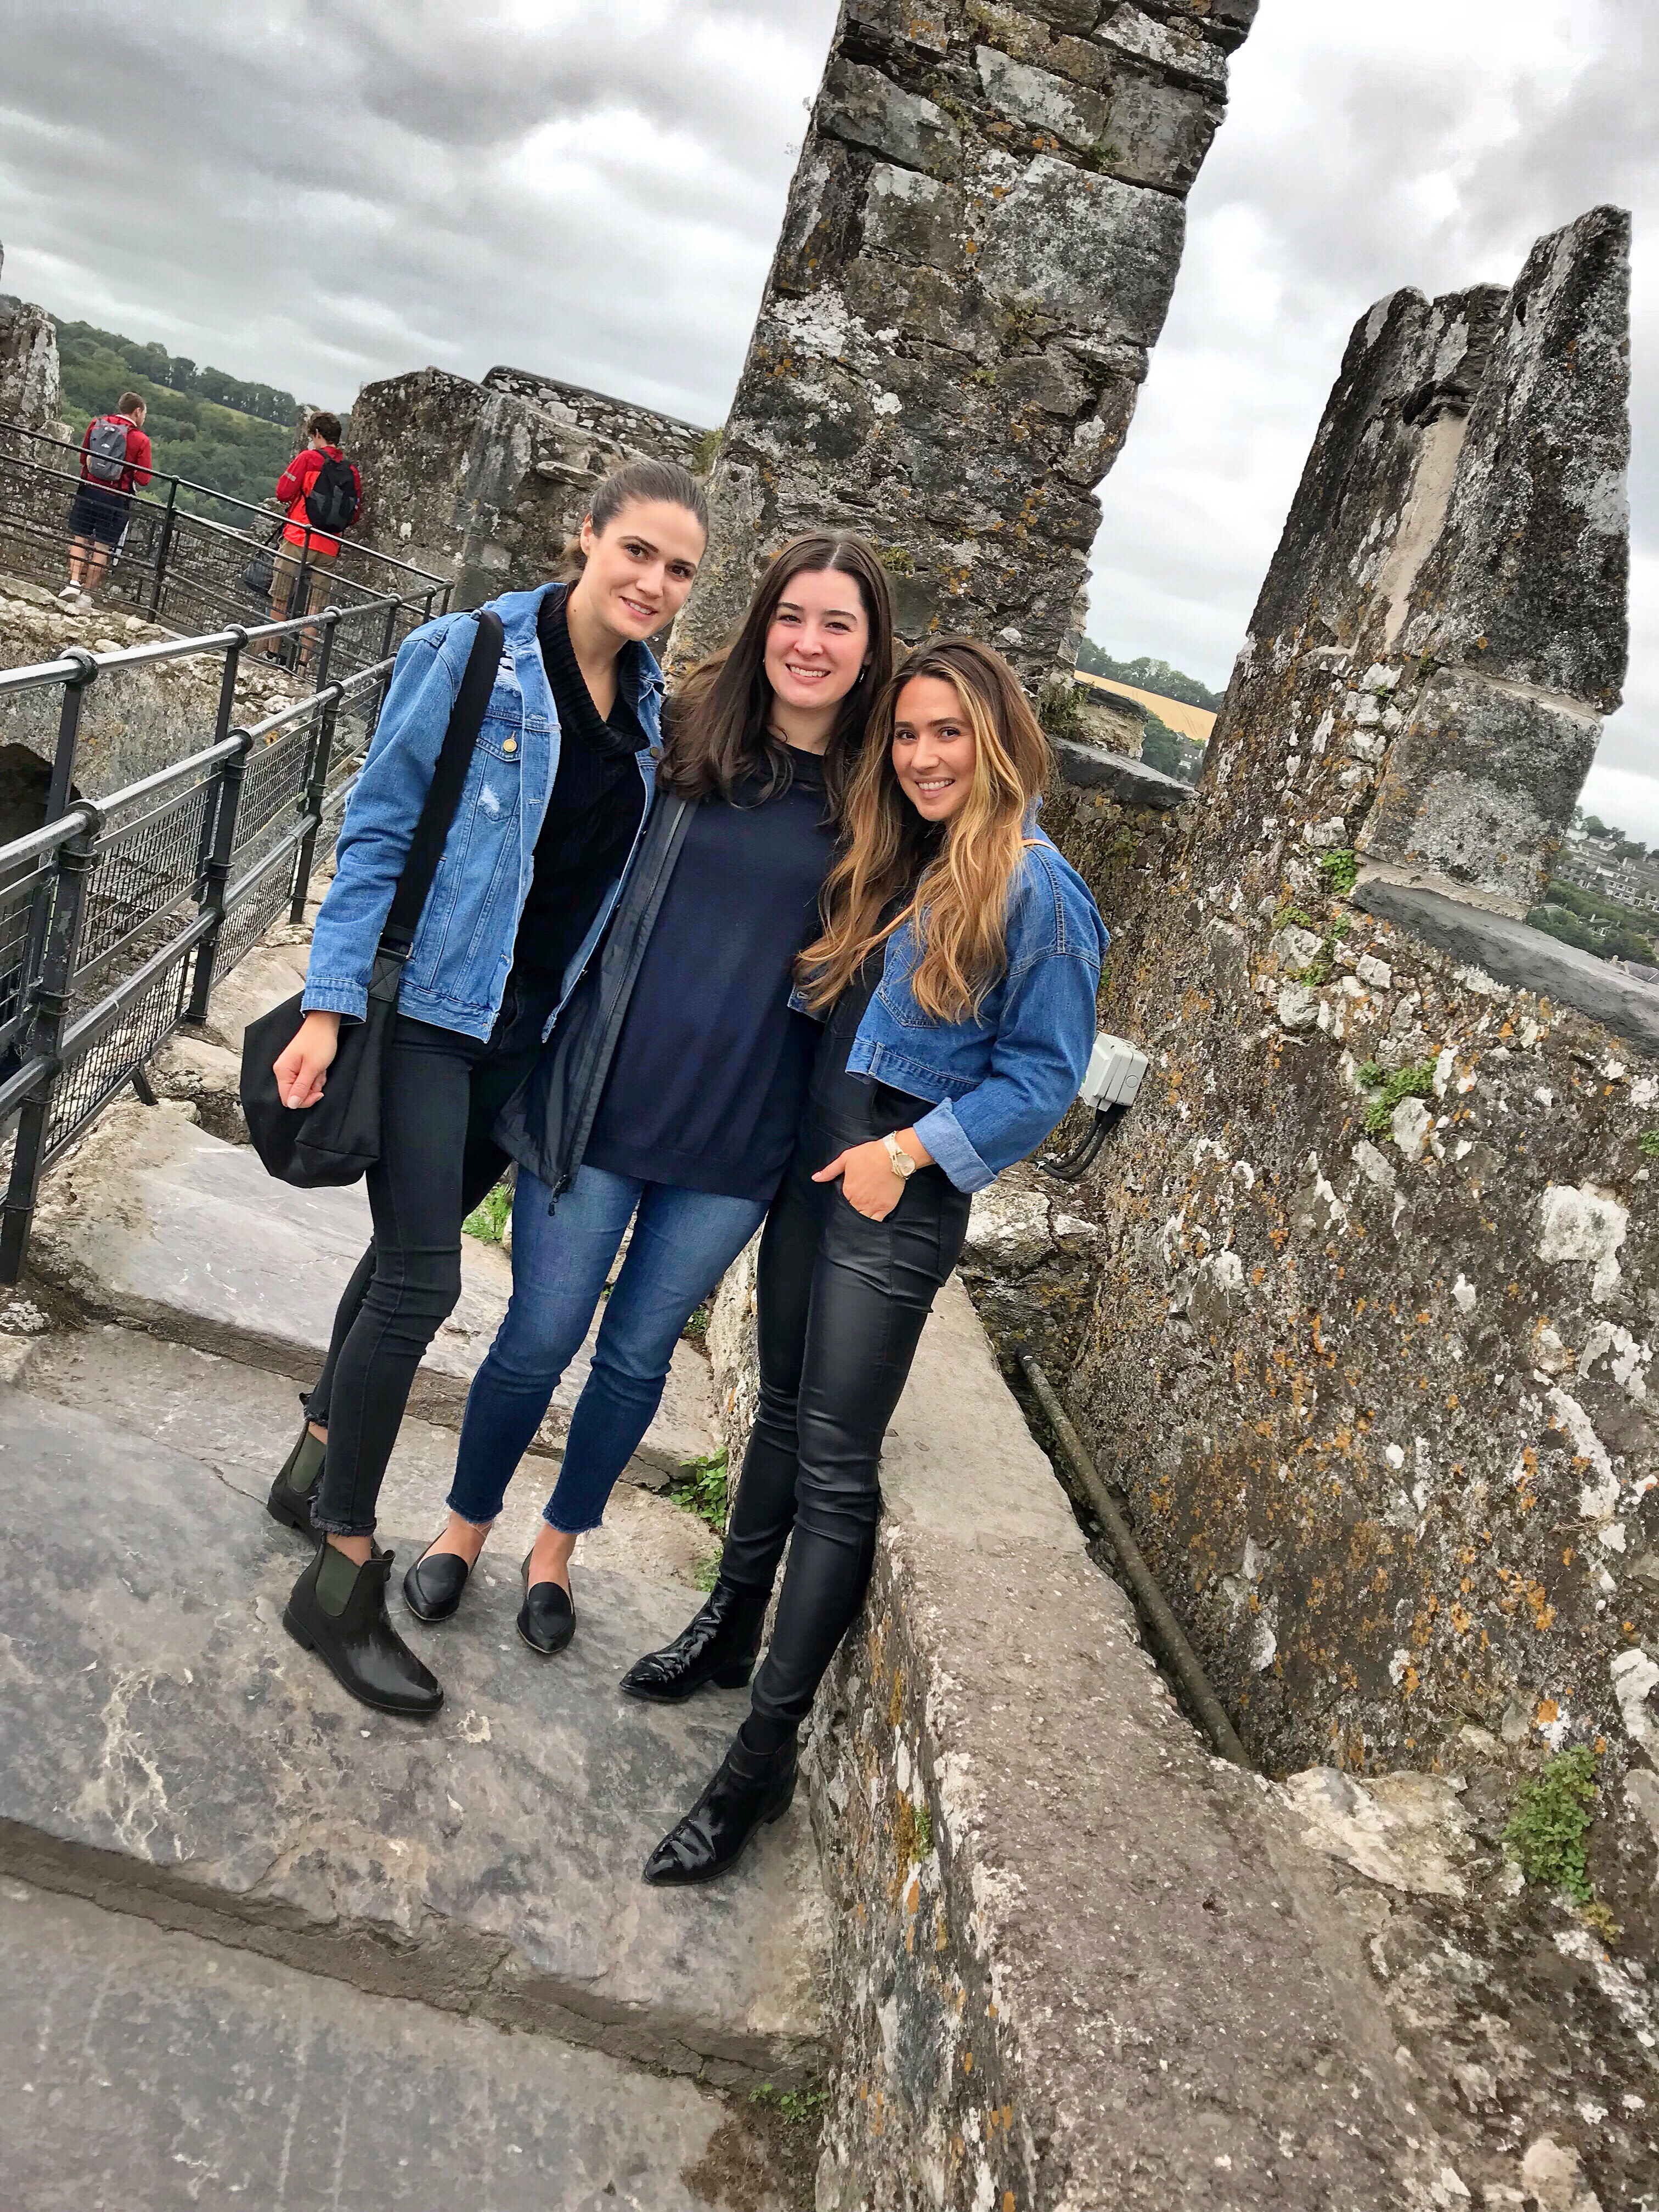 blarney-castle-ireland-girls-friends-top-of-castle